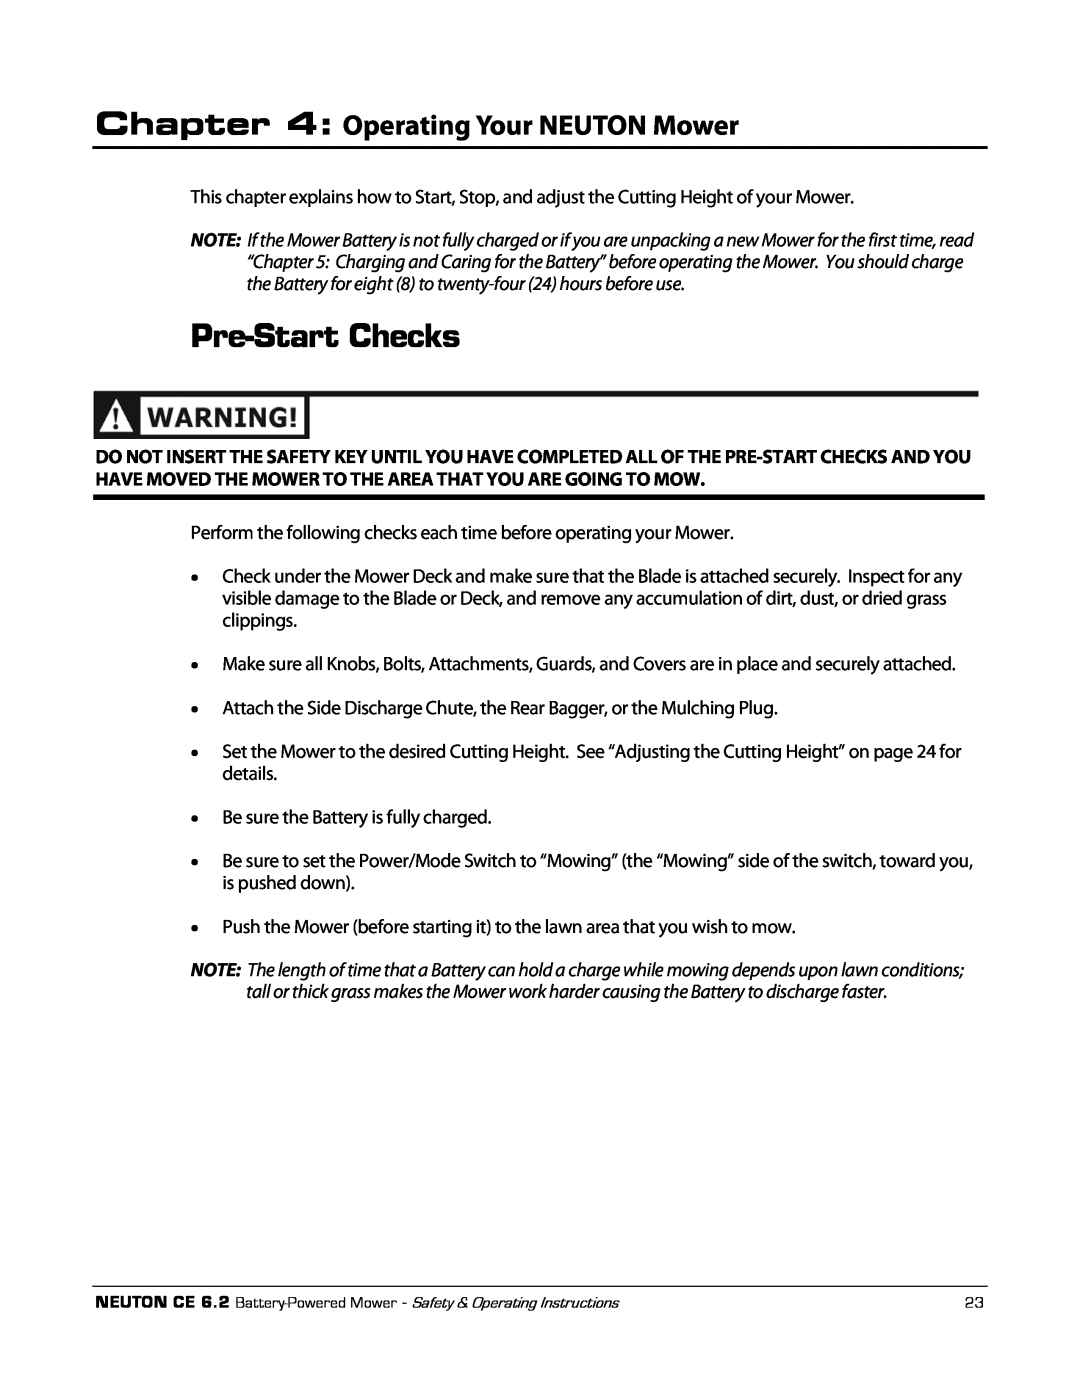 Neuton CE 6.2 manual Pre-StartChecks, Operating Your NEUTON Mower 